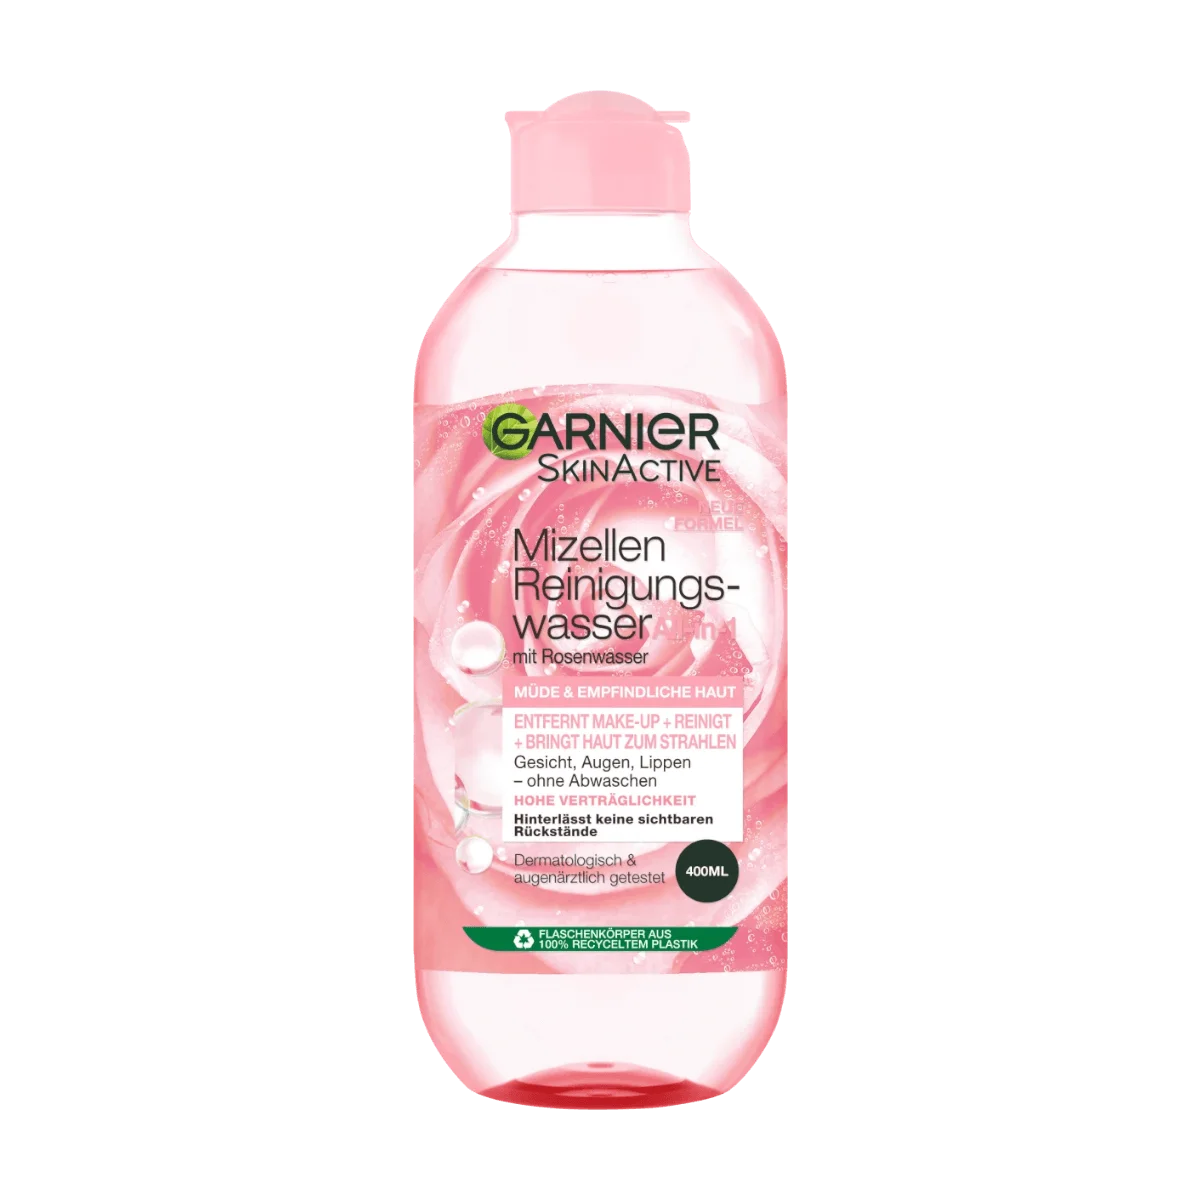 Garnier SkinActive Reinigungswasser Allin1 + Rosenwasser